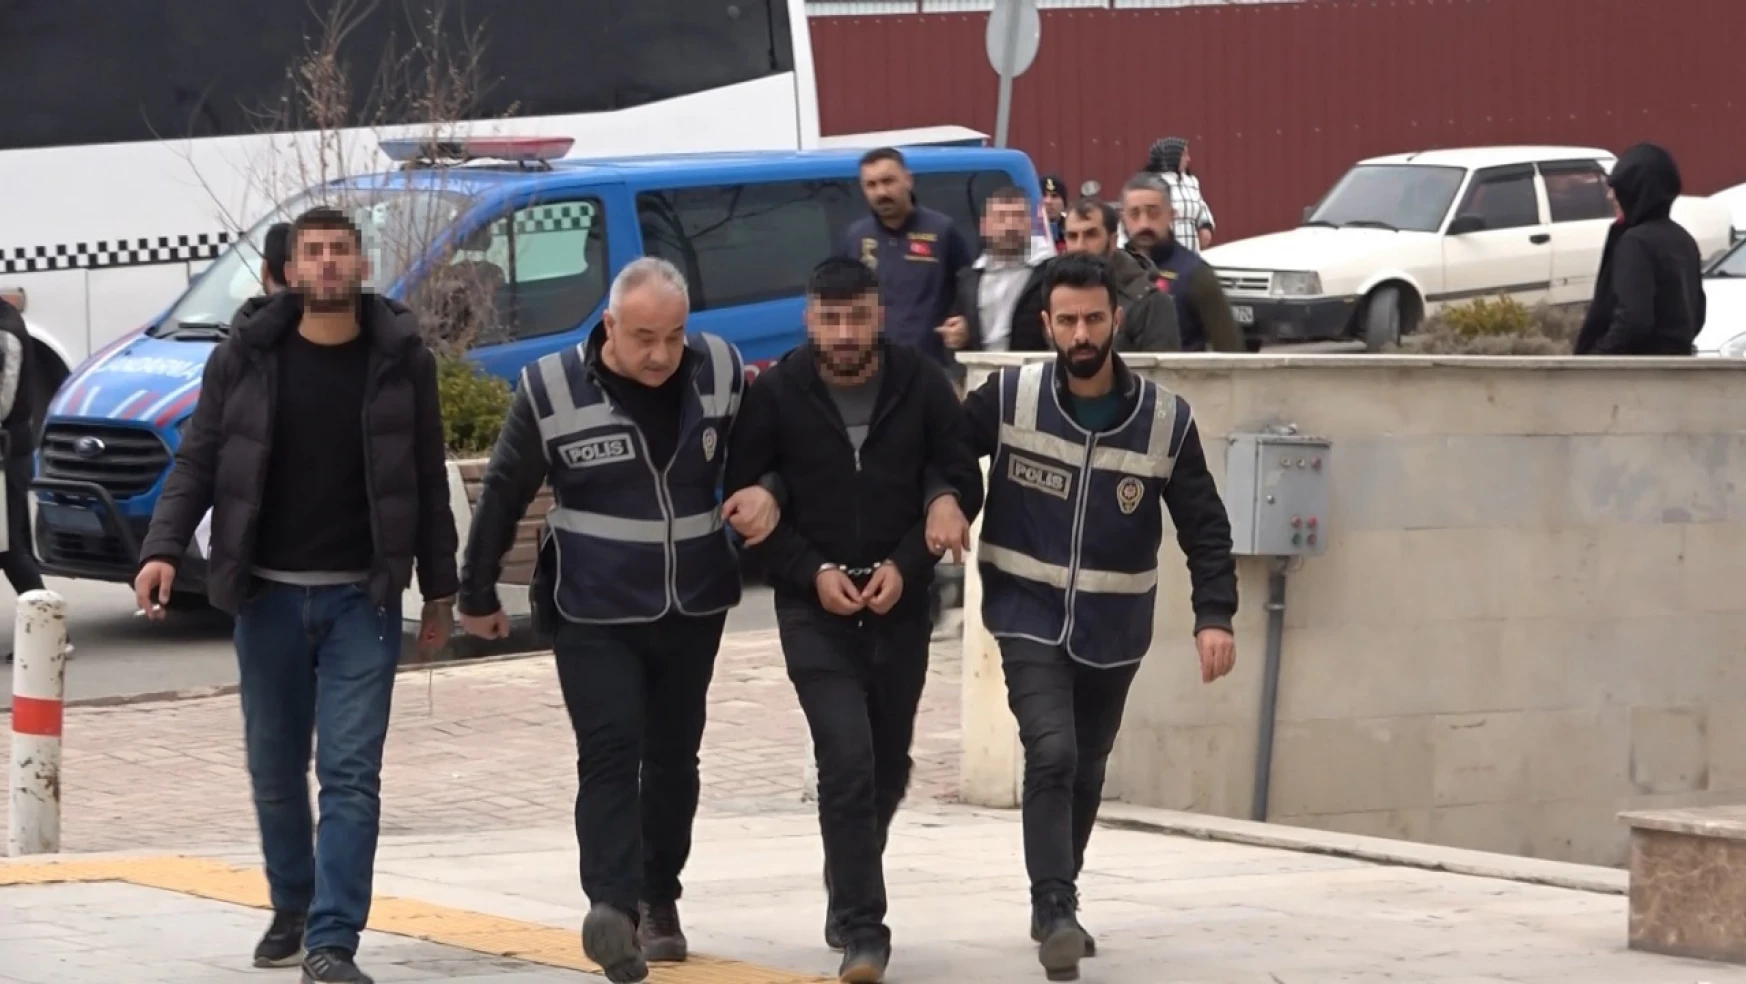 Elazığ'da silahlı çatışma olayına karışan 2 kişi tutuklandı